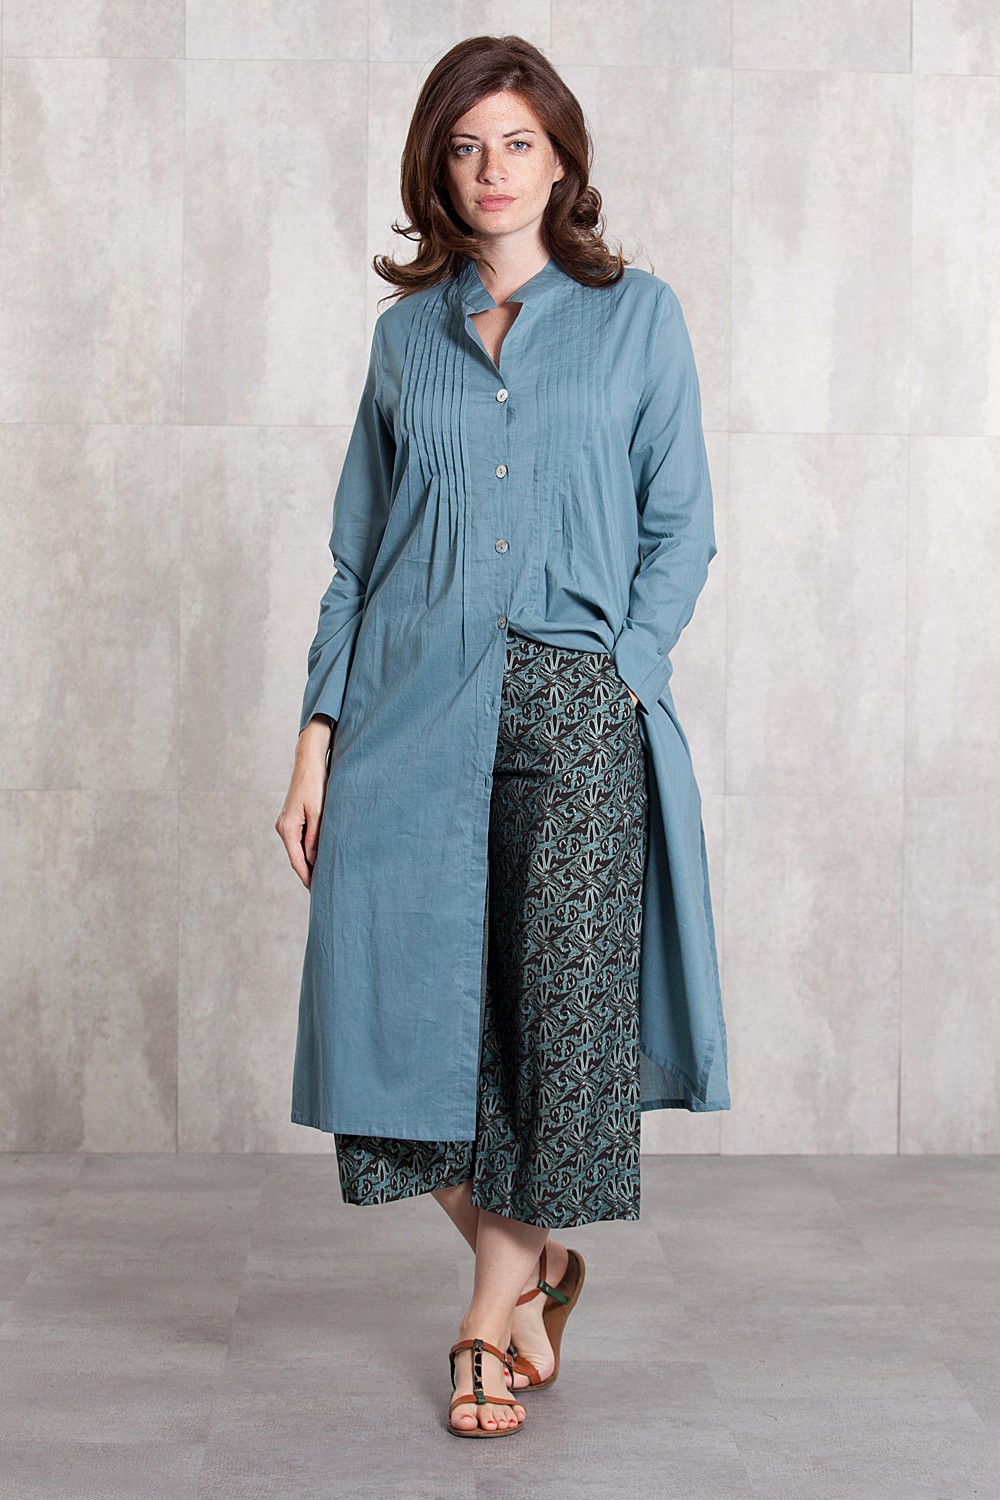 Dress Coat coton voil  -635-62-blue grey